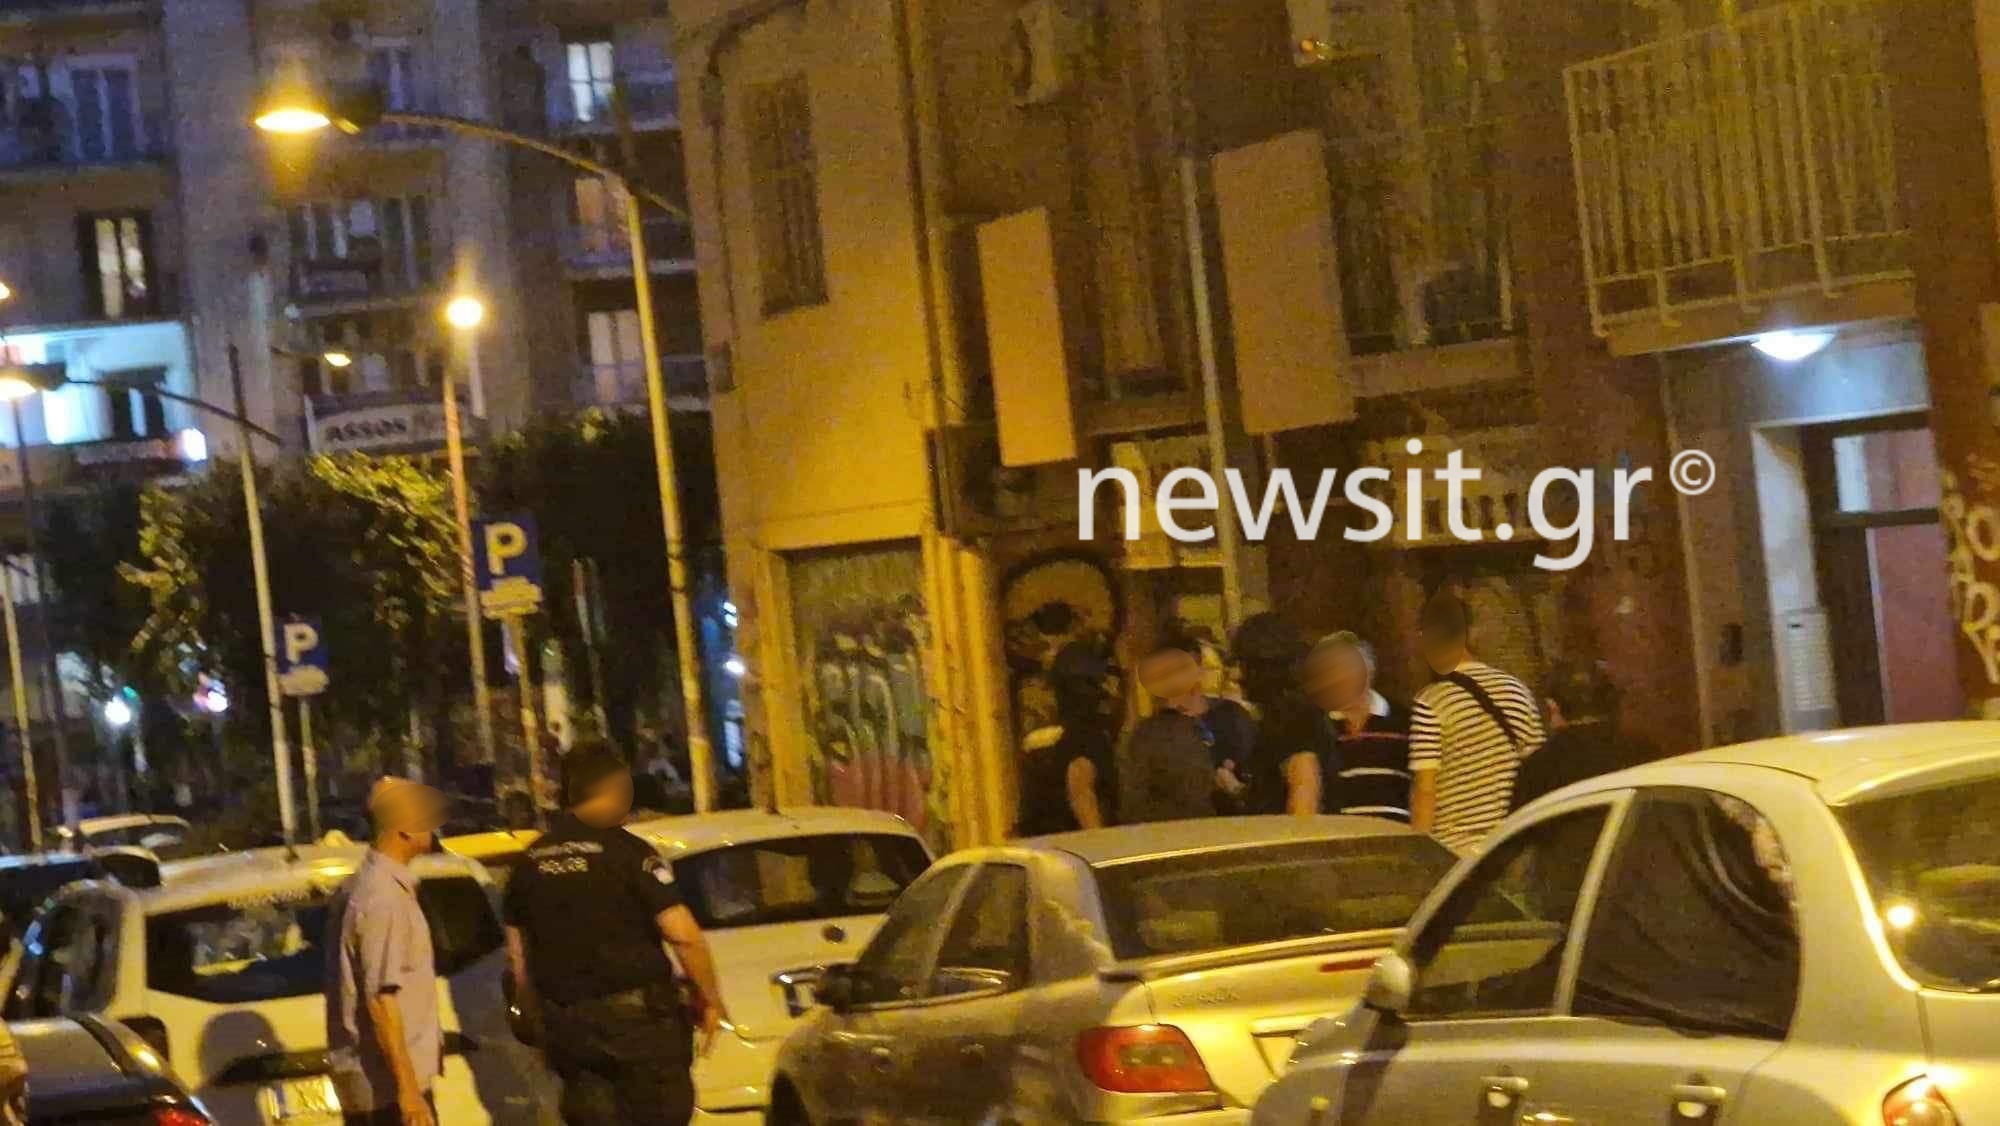 Θεσσαλονίκη: Συνελήφθη ο άνδρας που είχε ταμπουρωθεί στο σπίτι του